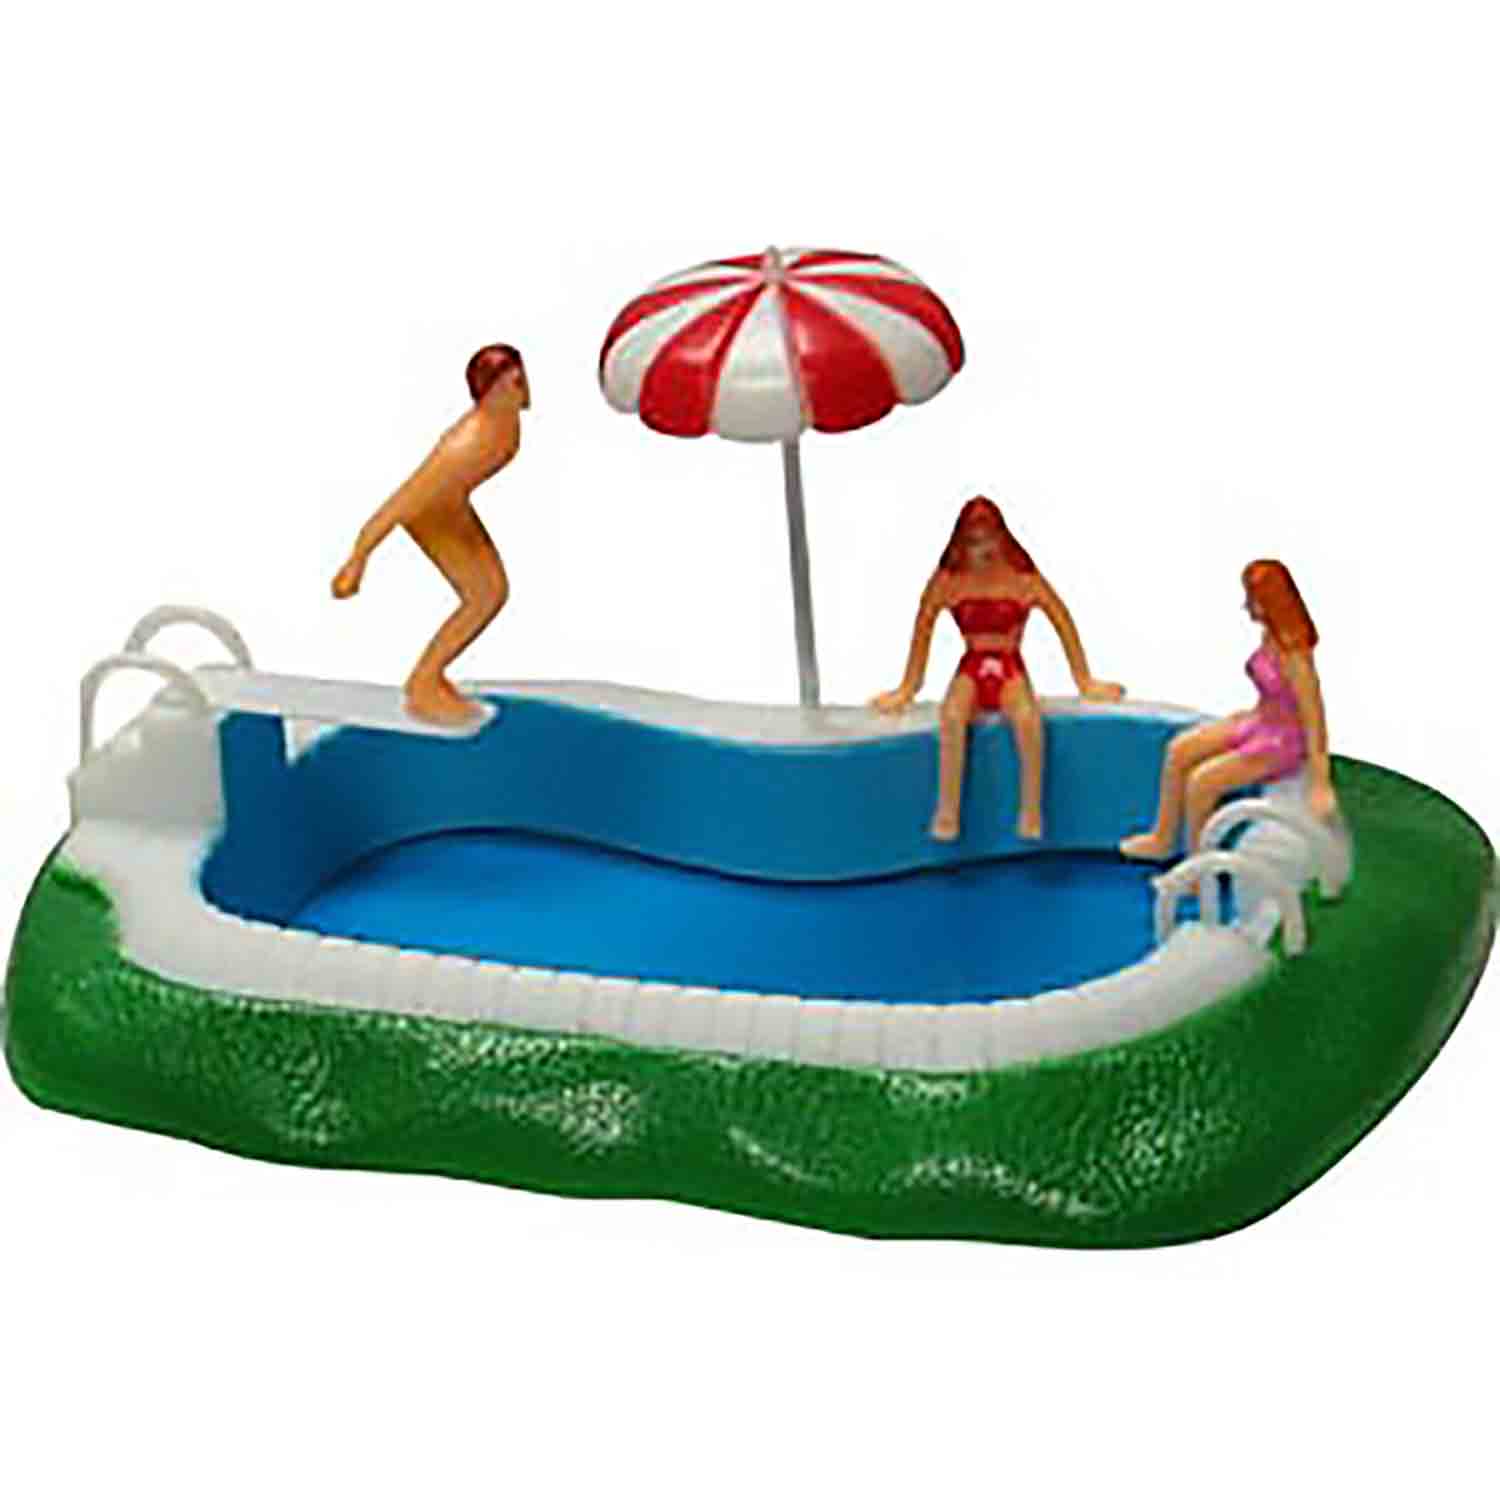 Swimming Pool Cake Topper Set